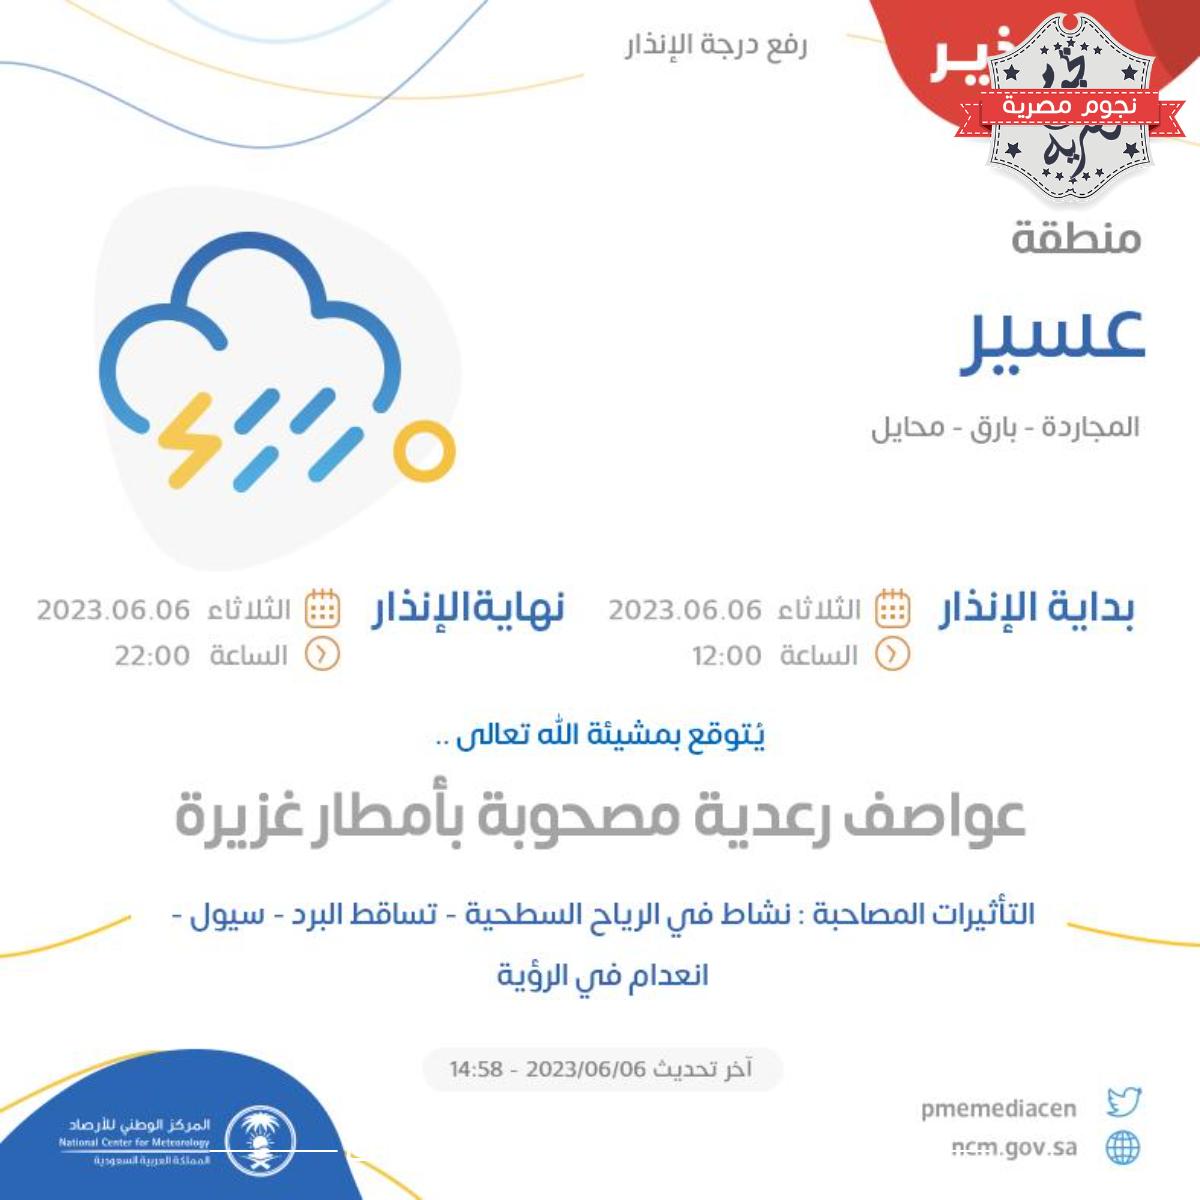 الوطني للأرصاد.. يحذر من سيول في عسير والمدينة المنورة و يتوقع أمطارًا على 12 منطقة بالمملكة